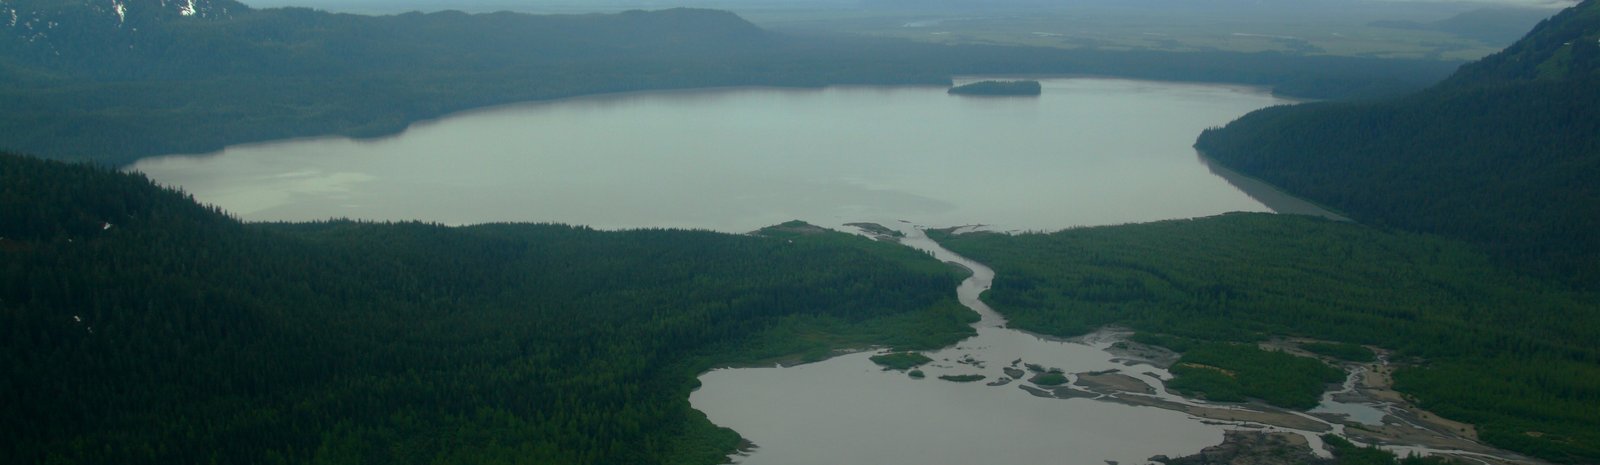 Bering River Coal Field